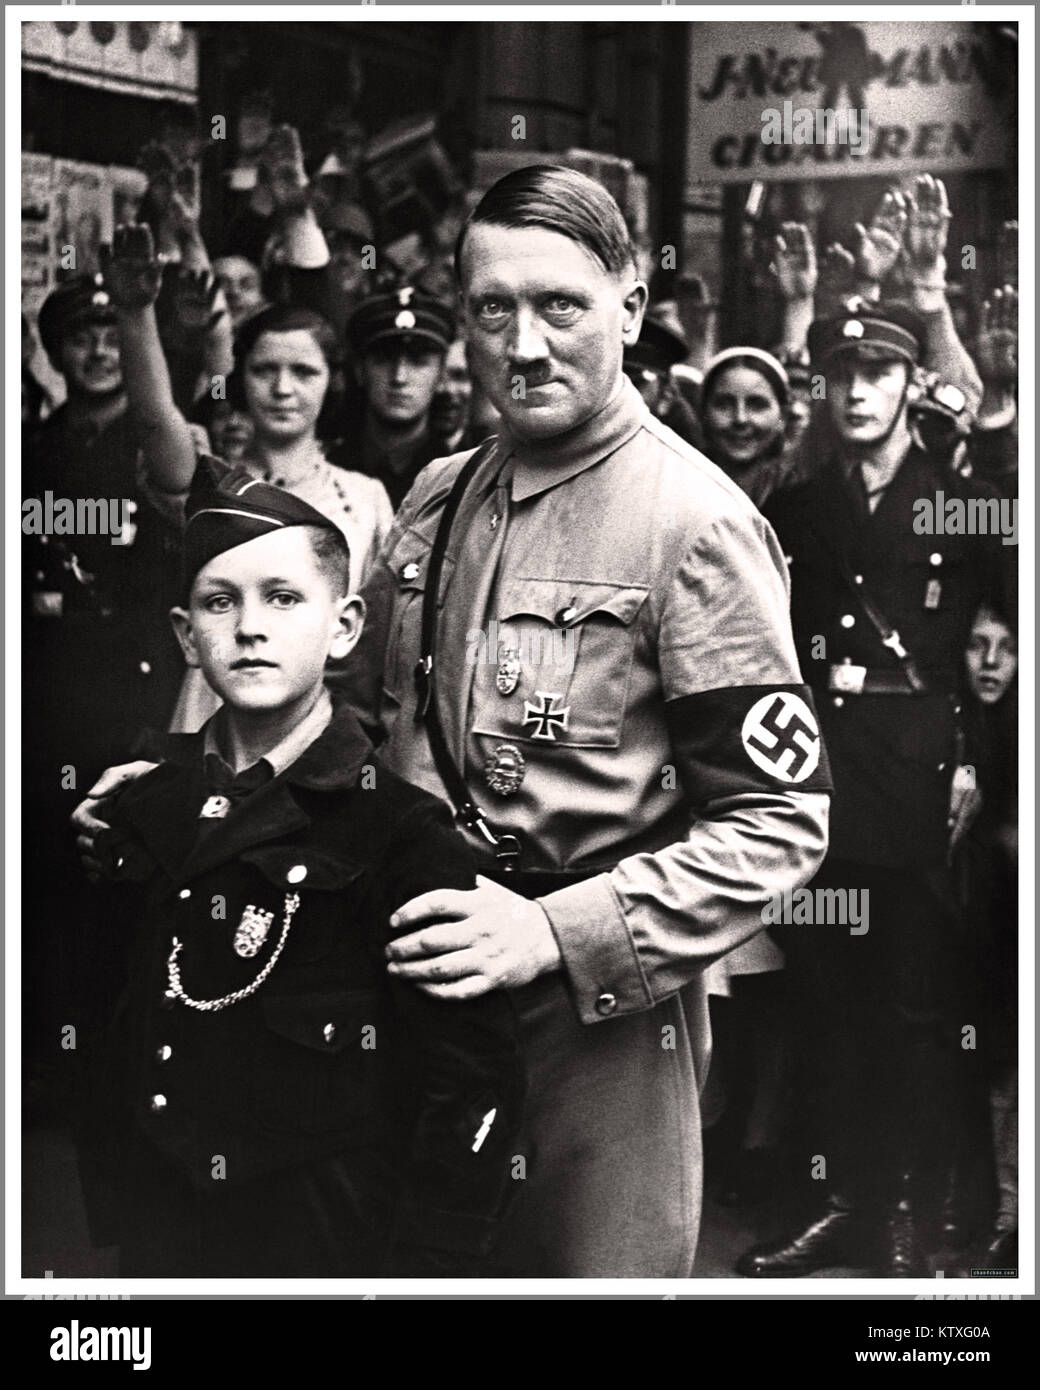 HITLER-Nazi-Deutschland-Propagandabild Adolf Hitler des 1930er NS-Diktators Adolf Hitler trug NSDAP-Uniform und Hakenkreuzarmband in Berlin und posierte mit einem erschreckenden Ausdruck neben einem 10-12-jährigen jungen Mitglied der Hitler-Jugend-Organisation Hitler-Jugend. Die Menge hat Heil Hitler gegrüßt. Stockfoto